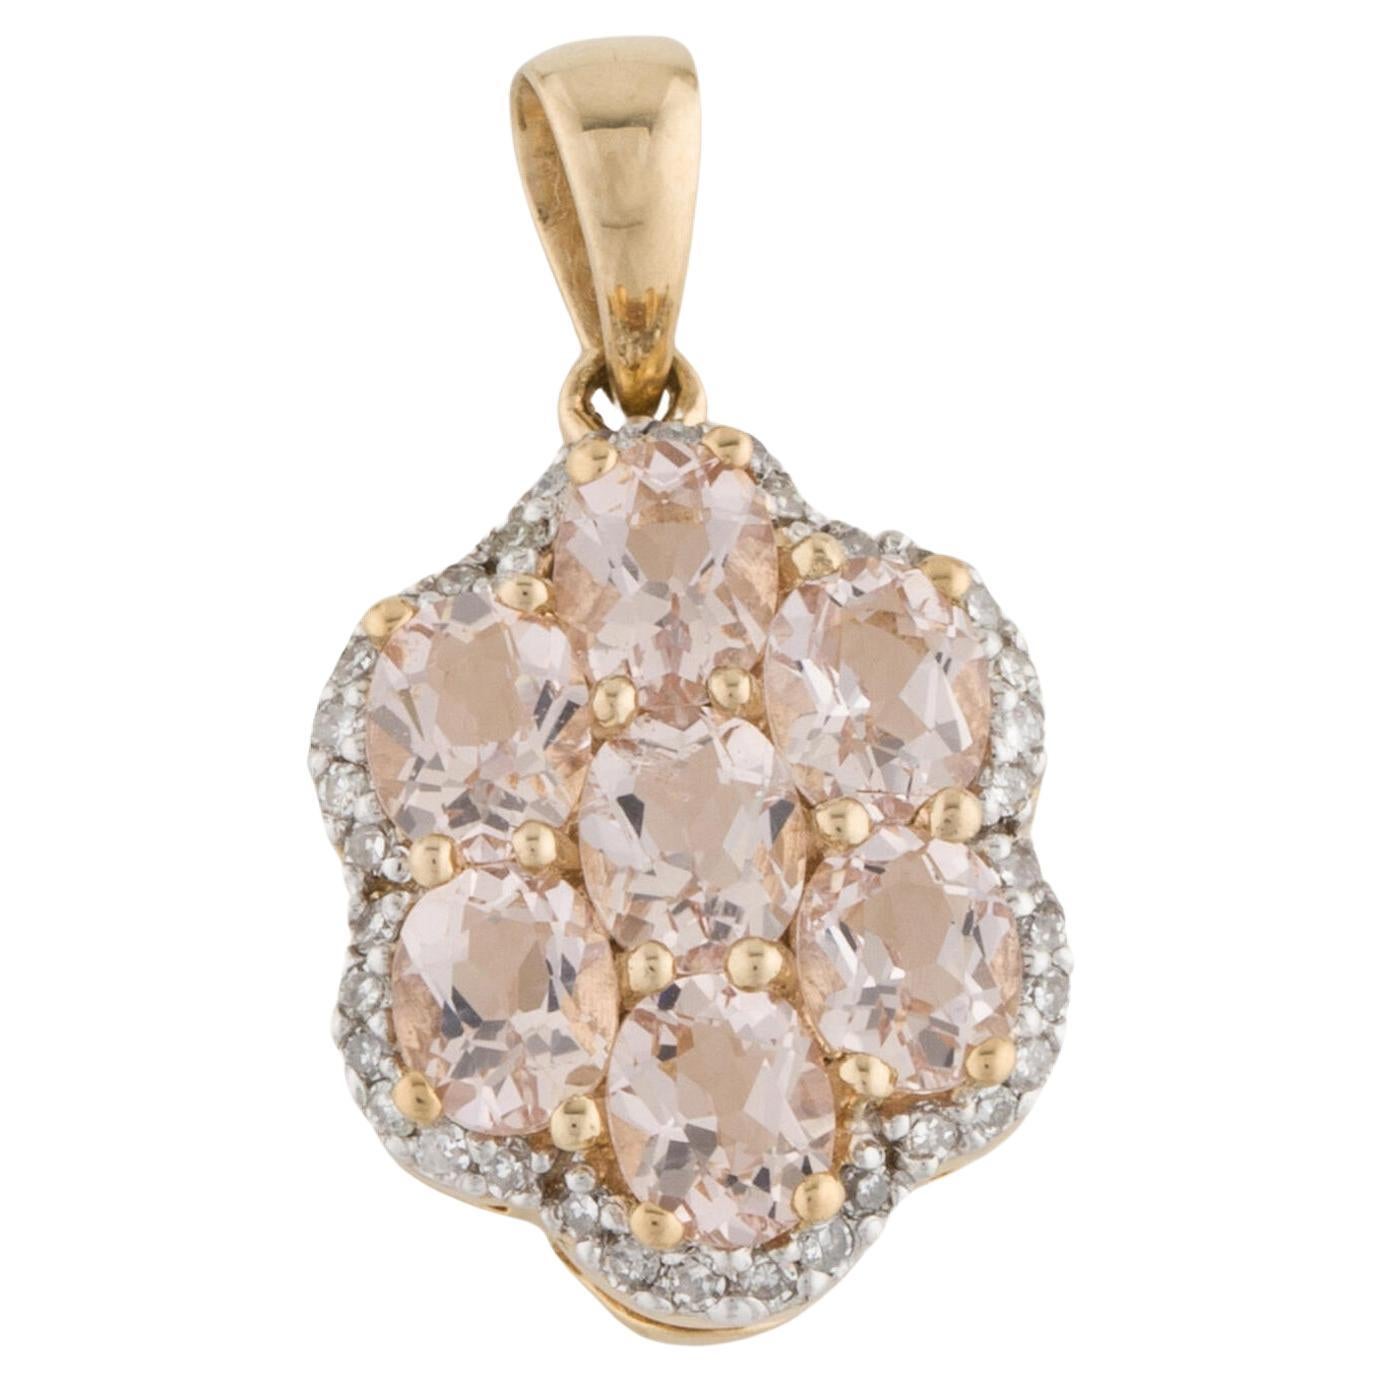 Exquisite 14K Diamond & Morganite Pendant - Elegant Gemstone Statement Piece